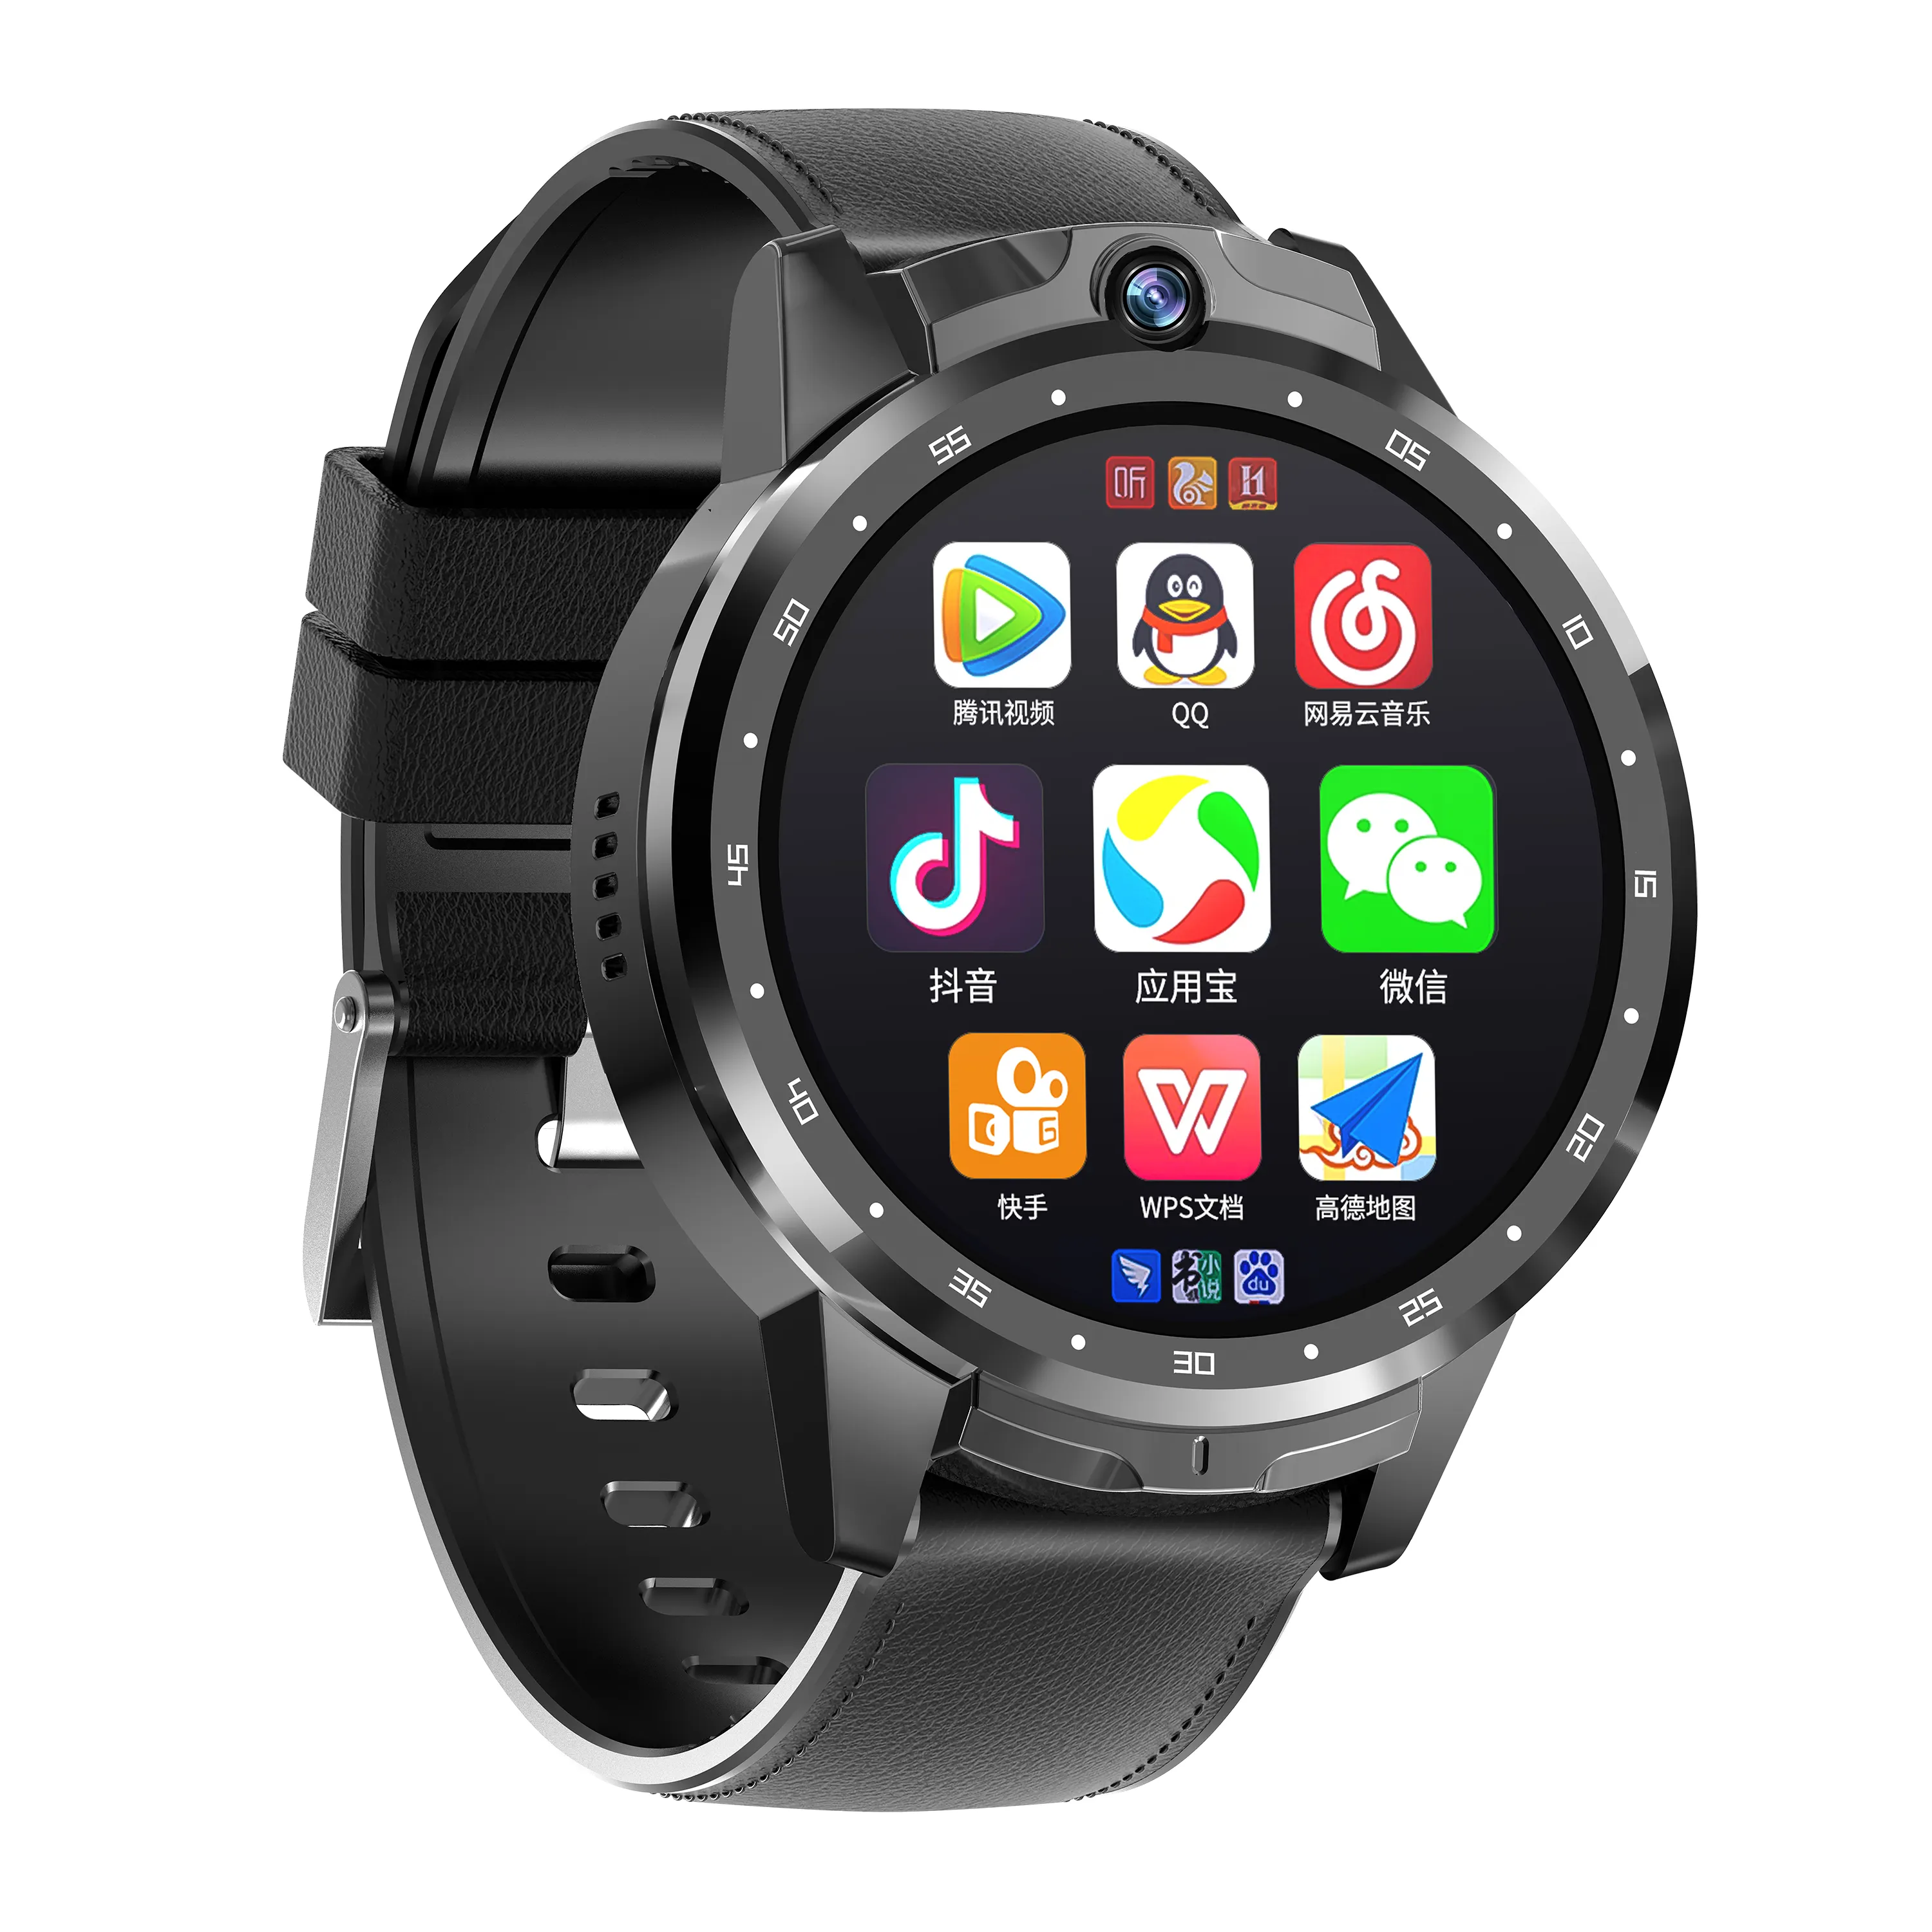 Lemfo — montre connectée 4G Android 8.1, bracelet avec GPS, wi-fi, 4G, appareil photo de 5mp, fente pour carte SIM, double caméra, écran de 1.6 pouces